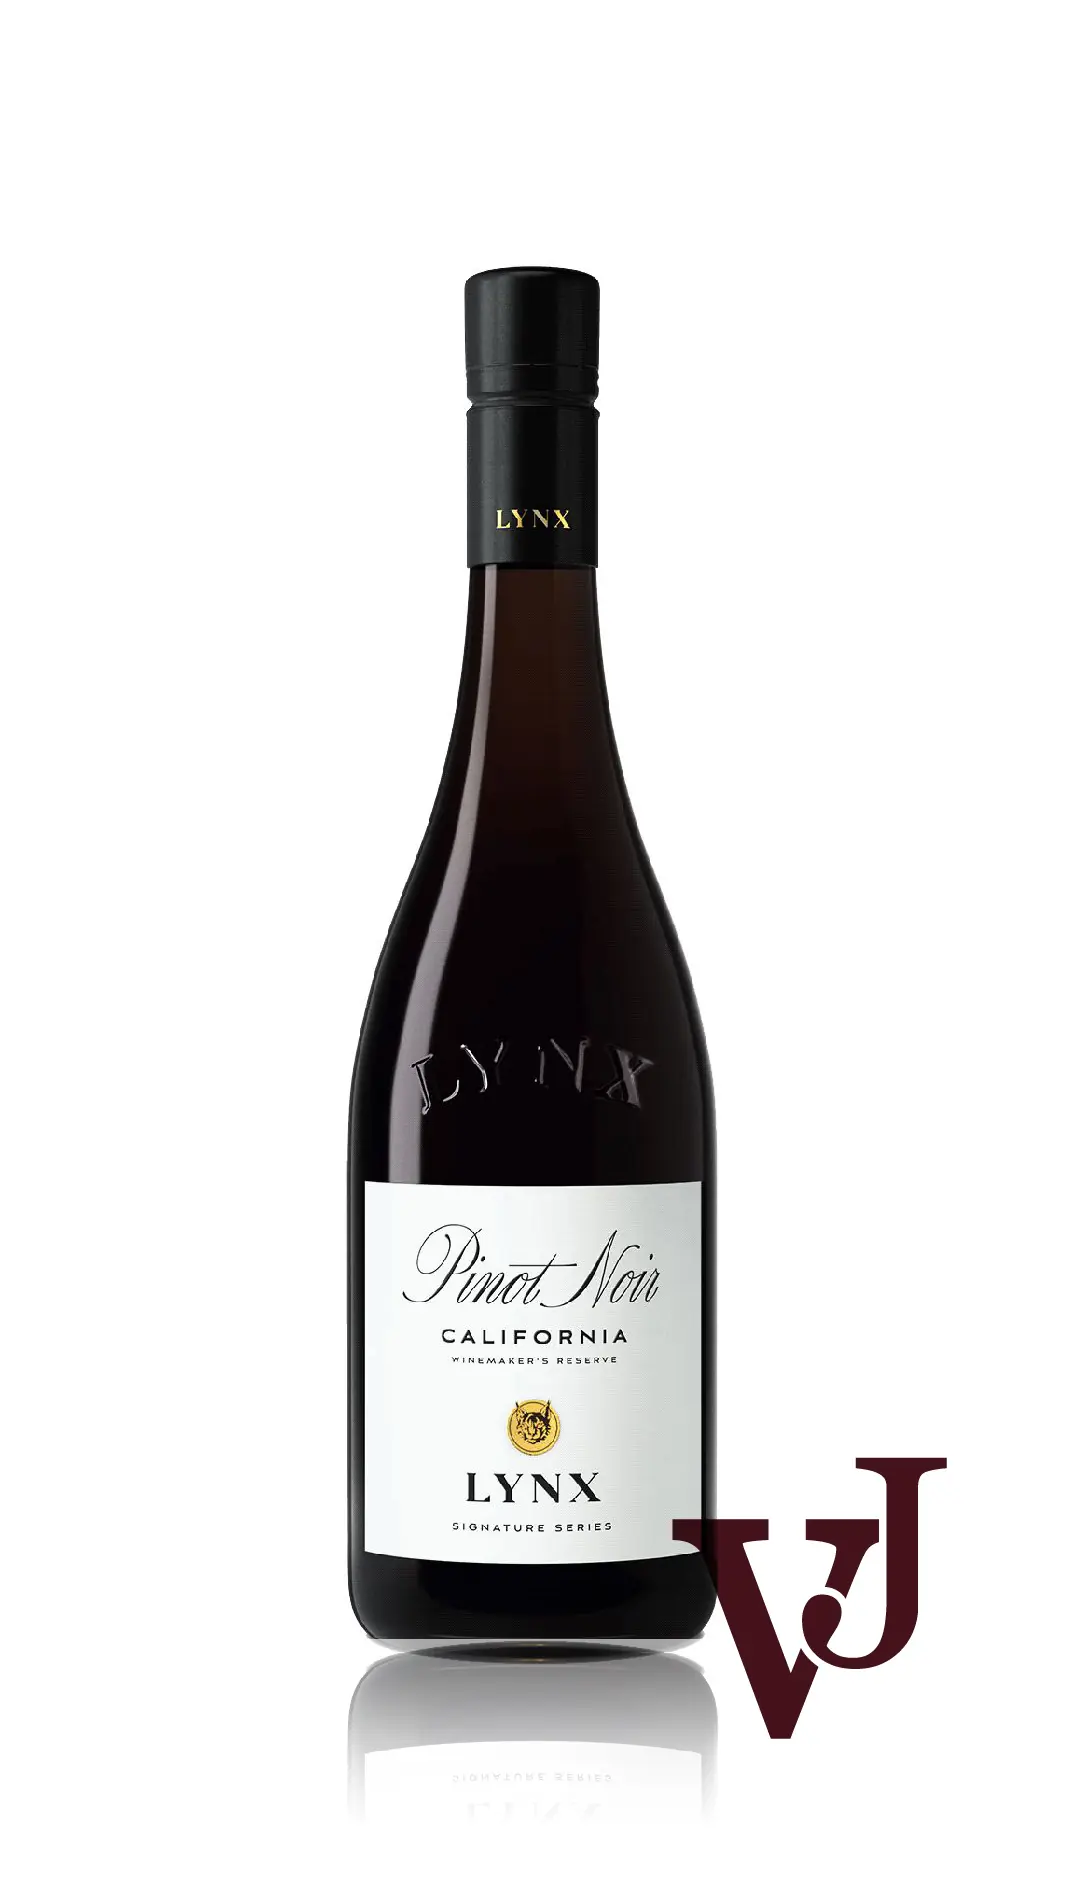 Rött Vin - Lynx Pinot Noir artikel nummer 7099001 från producenten House of Big Wines från området USA - Vinjournalen.se